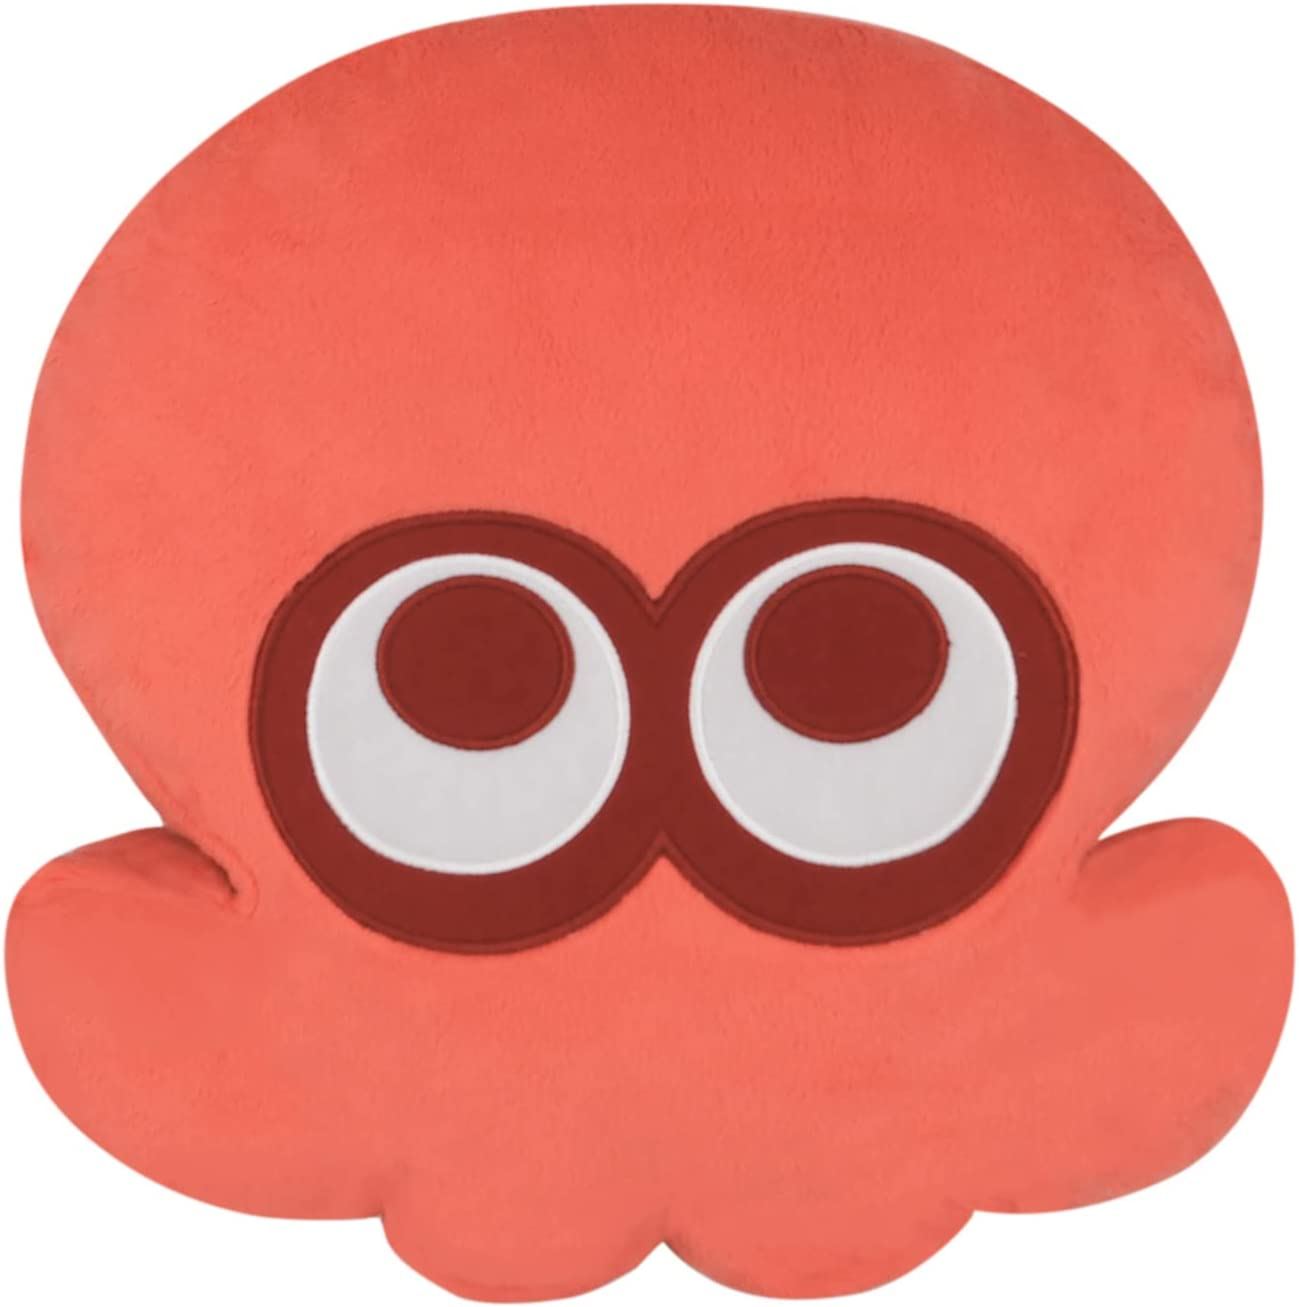 Splatoon 3 All Star Collection Cushion: Octopus Red (Re-run) San-ei Boeki